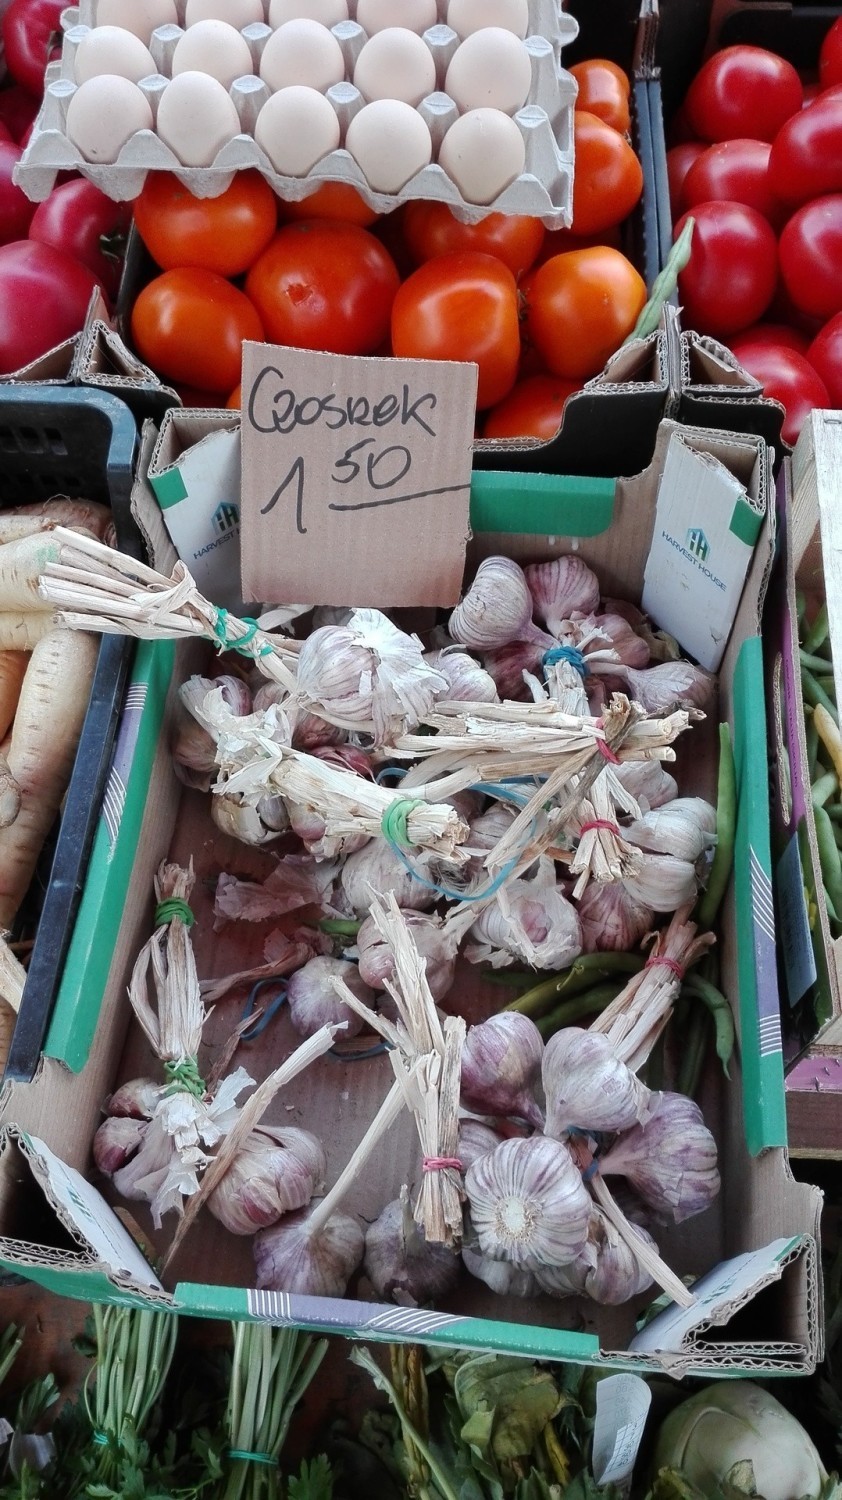 Ceny warzyw na targowisku w Dąbrowie Górniczej

Zobacz...